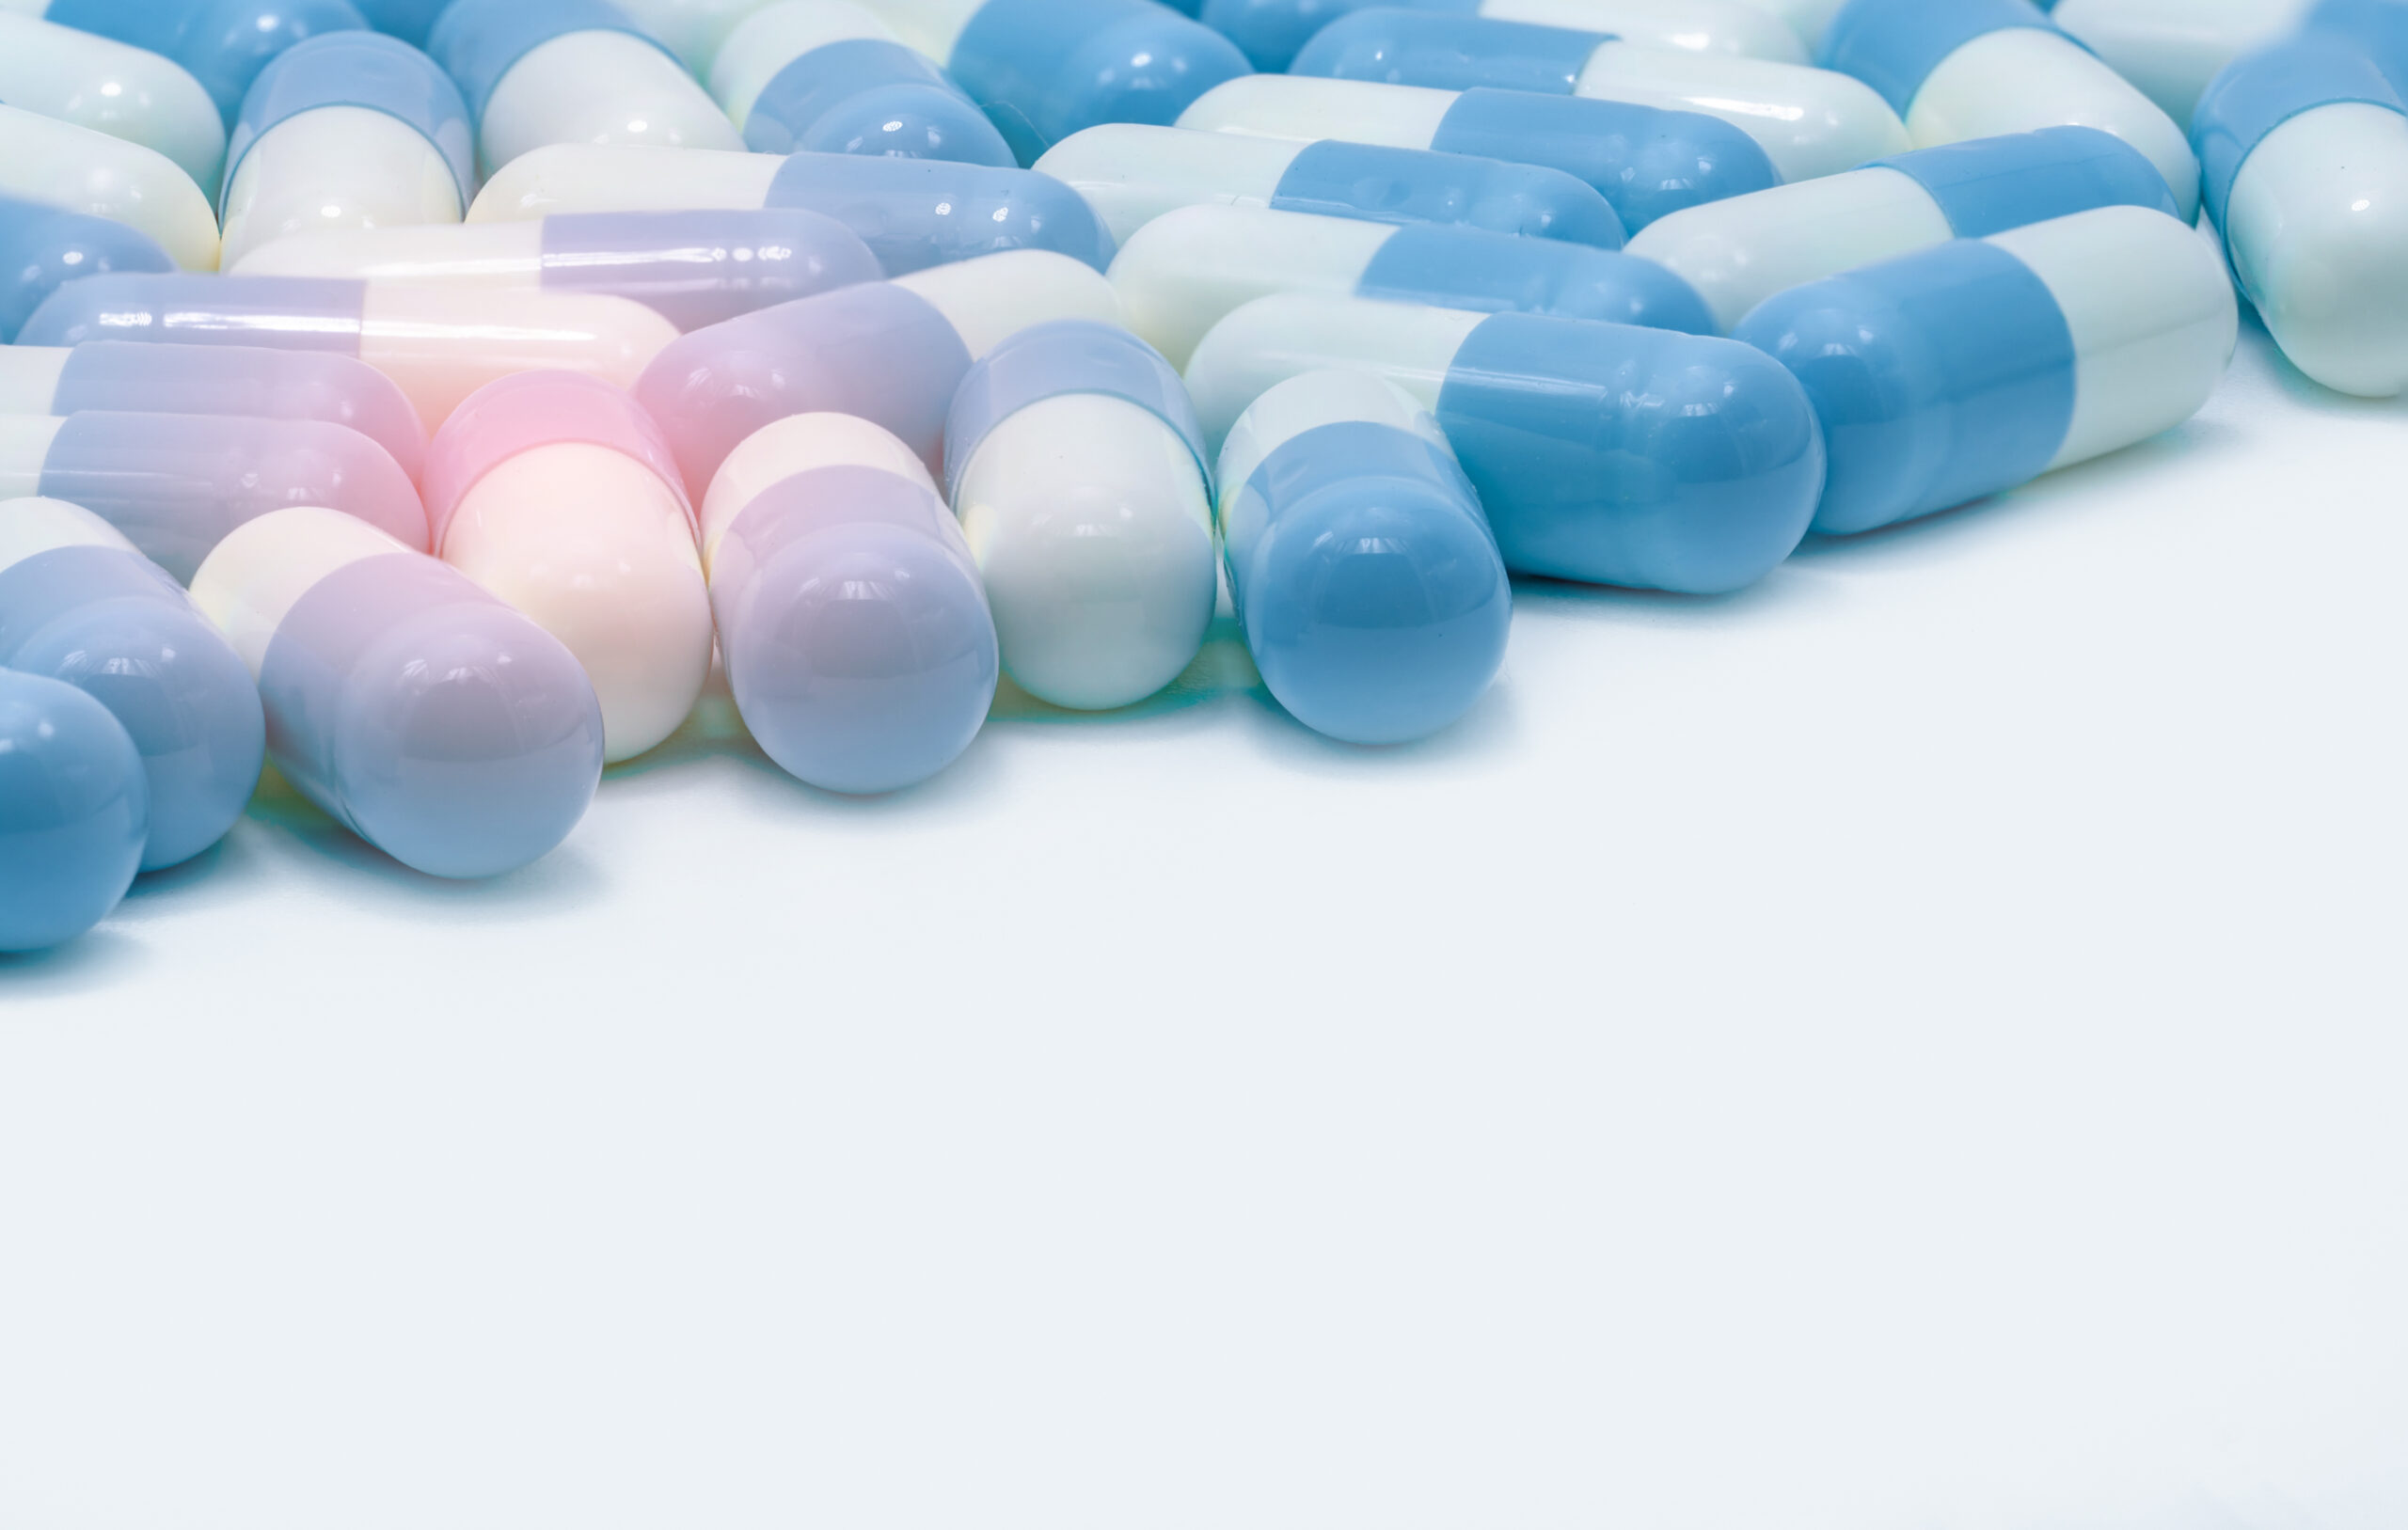 Na czystym białym tle rozlokowane są niebieskie tabletki wykorzystywane w medycynie naturalnej. Ich jasny odcień odzwierciedla czystość i naturalność, podkreślając ich związek z holistycznym podejściem do zdrowia i dobrostanu.